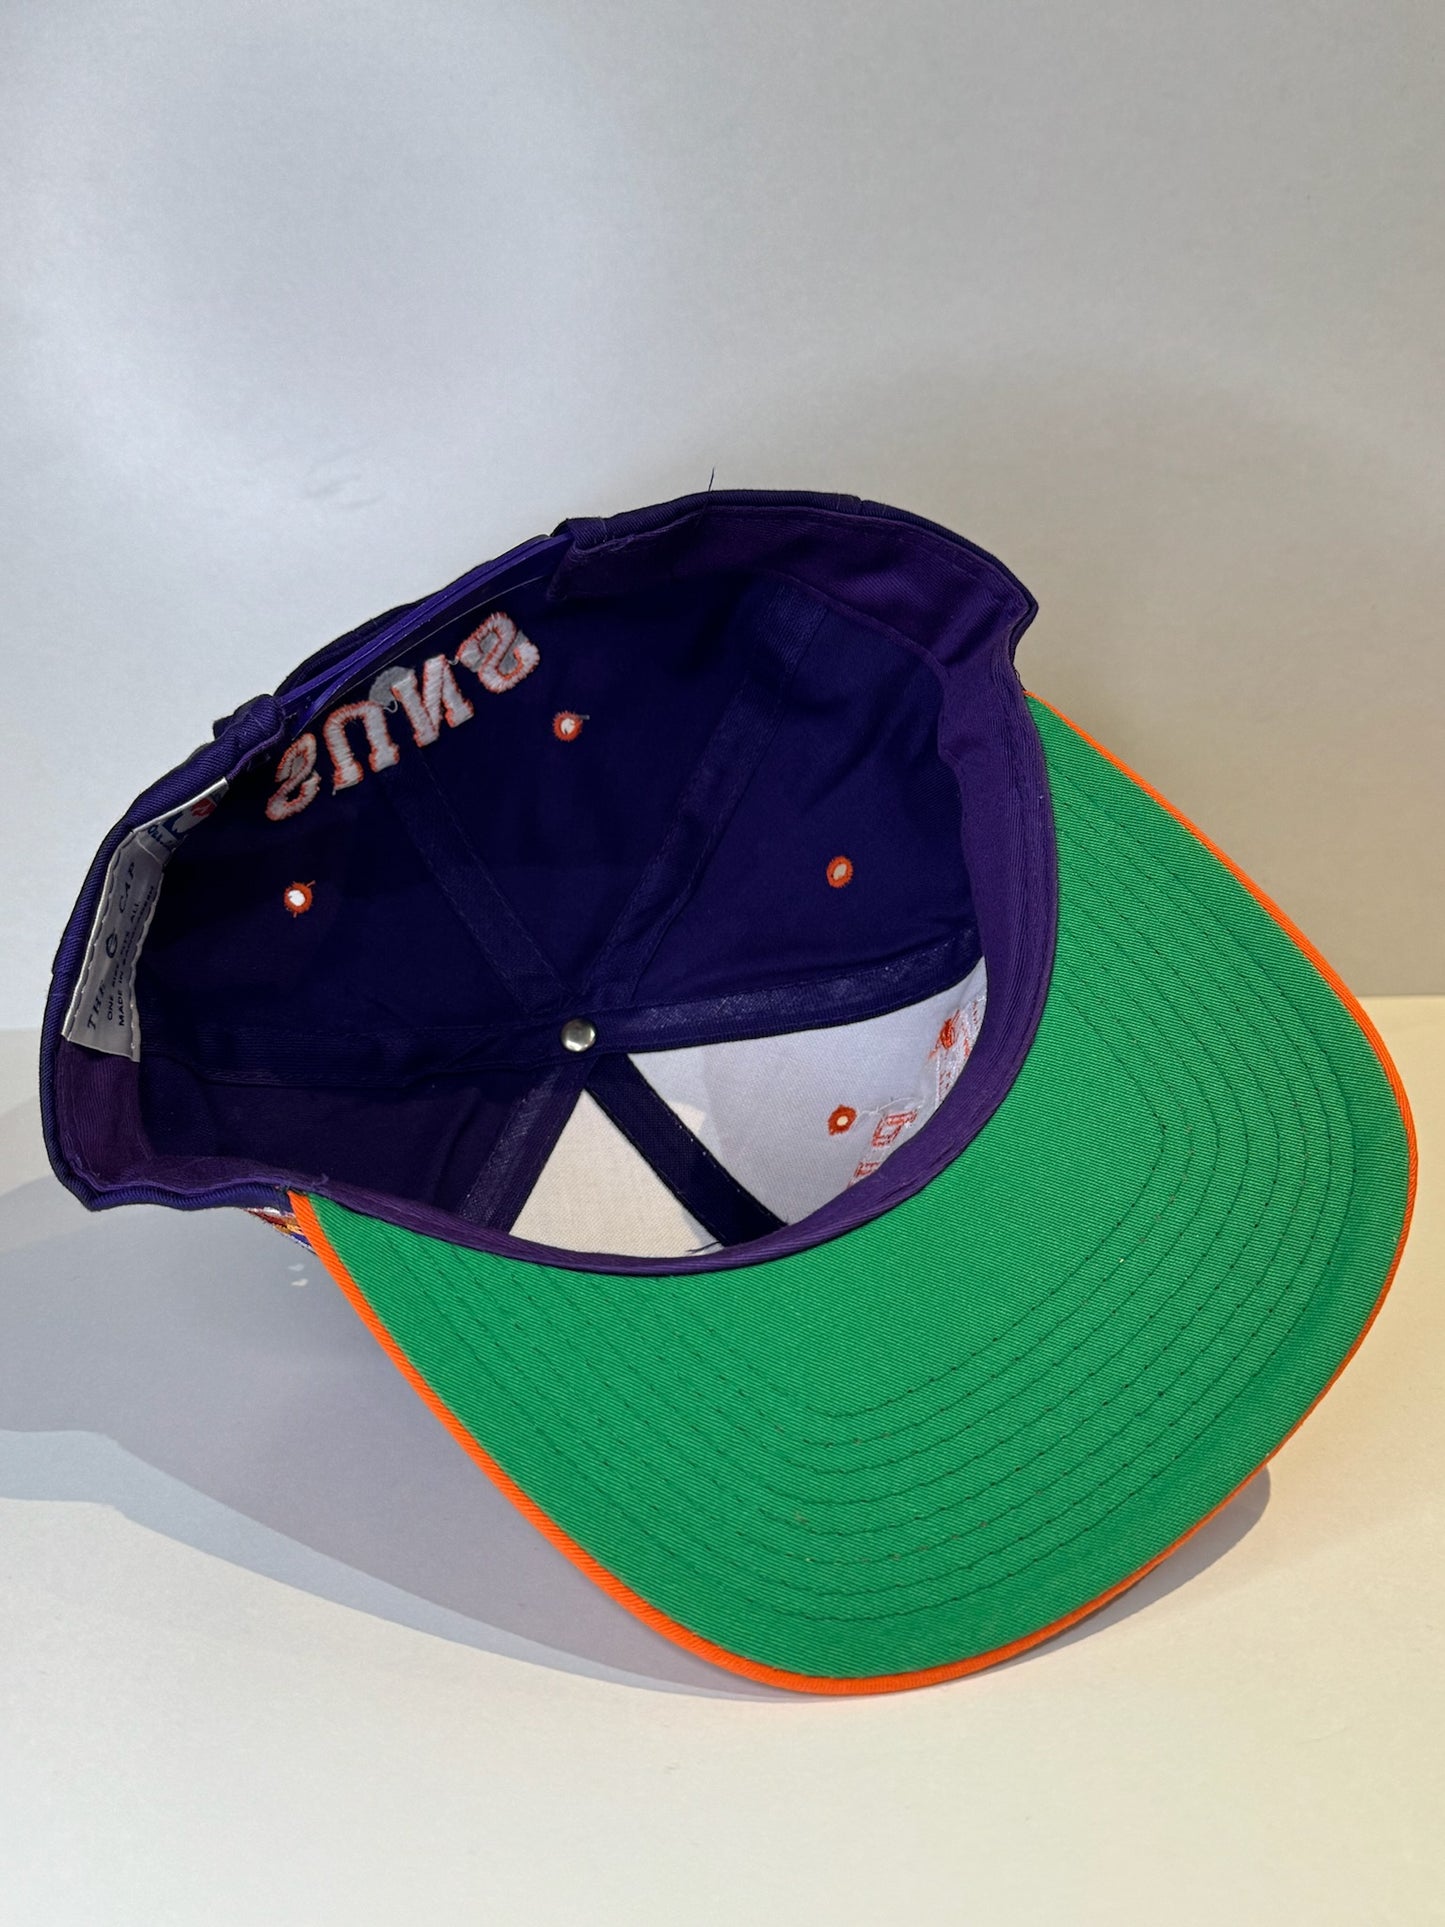 VINTAGE 90s PHOENIX SUNS THE G CAP SNAPBACK CAP HAT